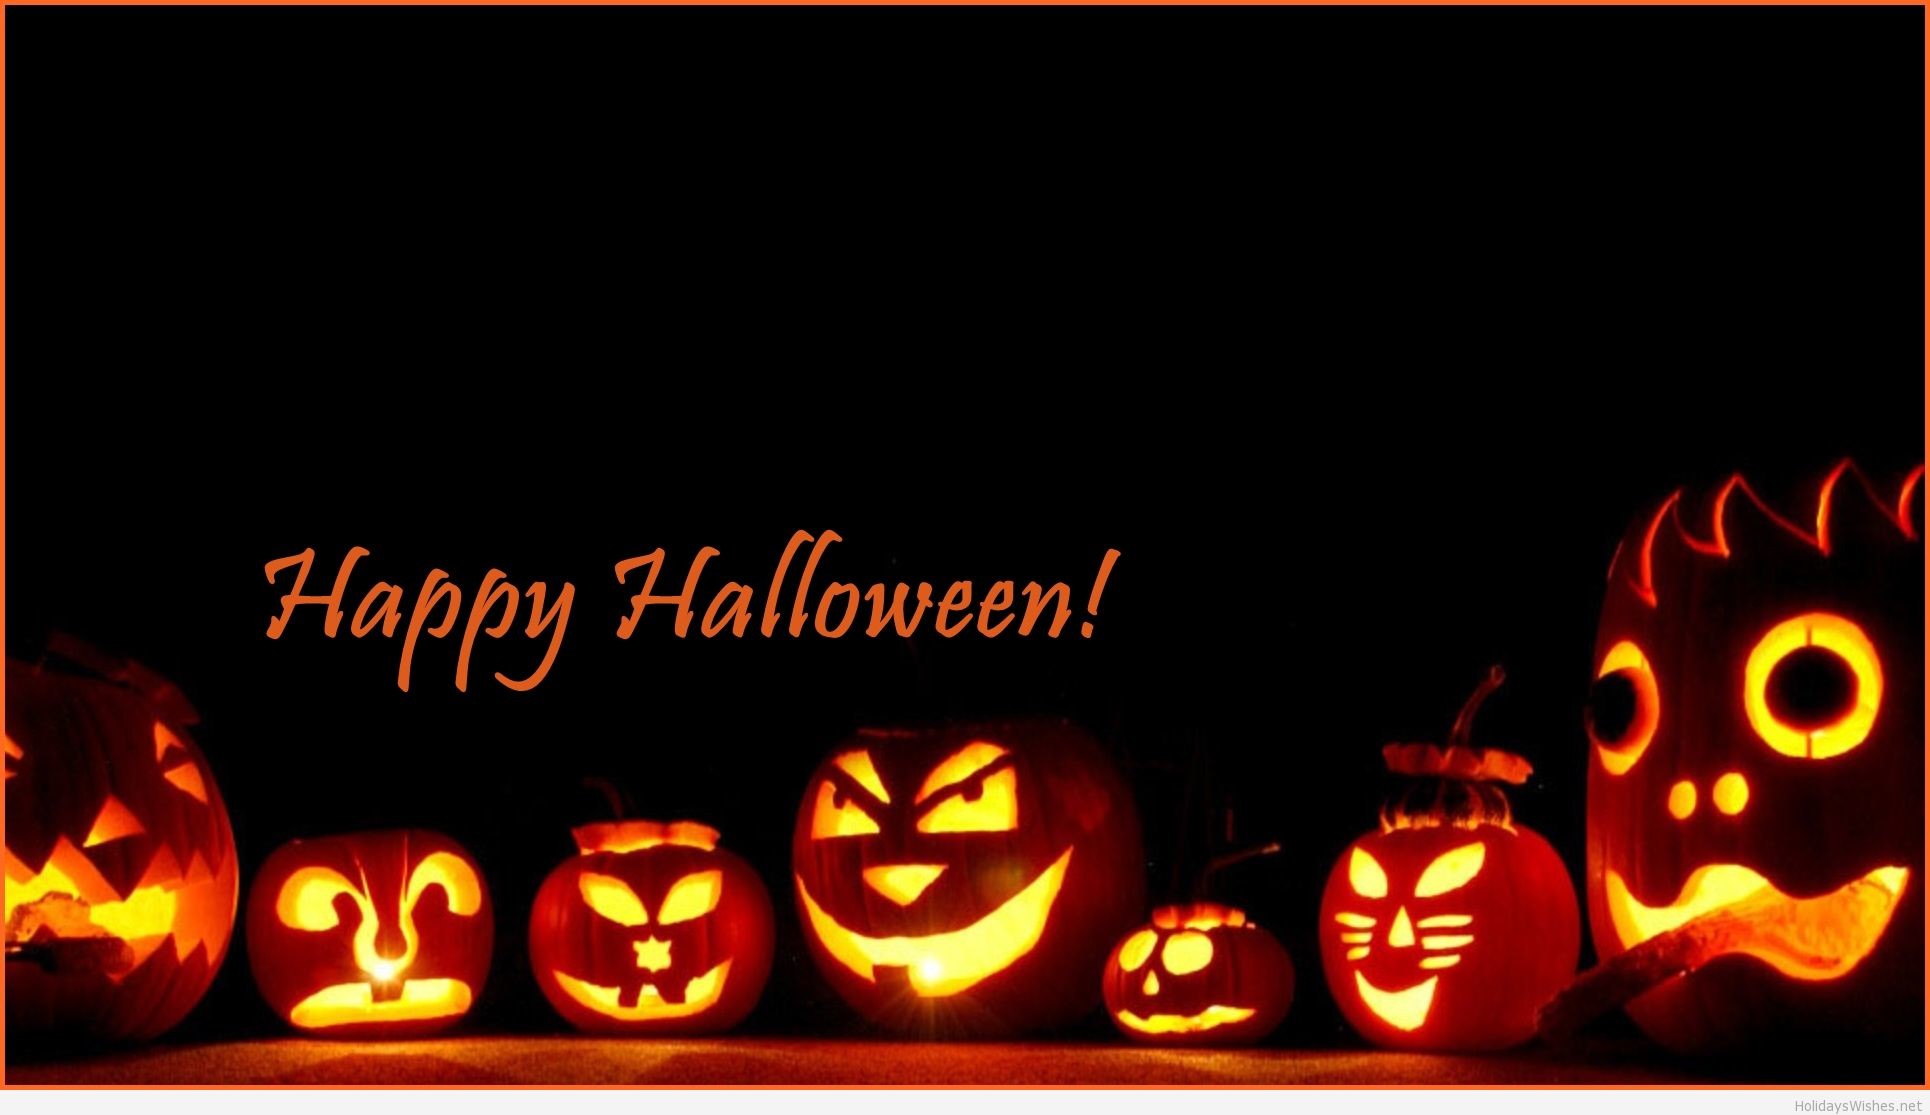 1930x1115 Halloween Pumpkin Backgrounds | PixelsTalk.Net Happy ...